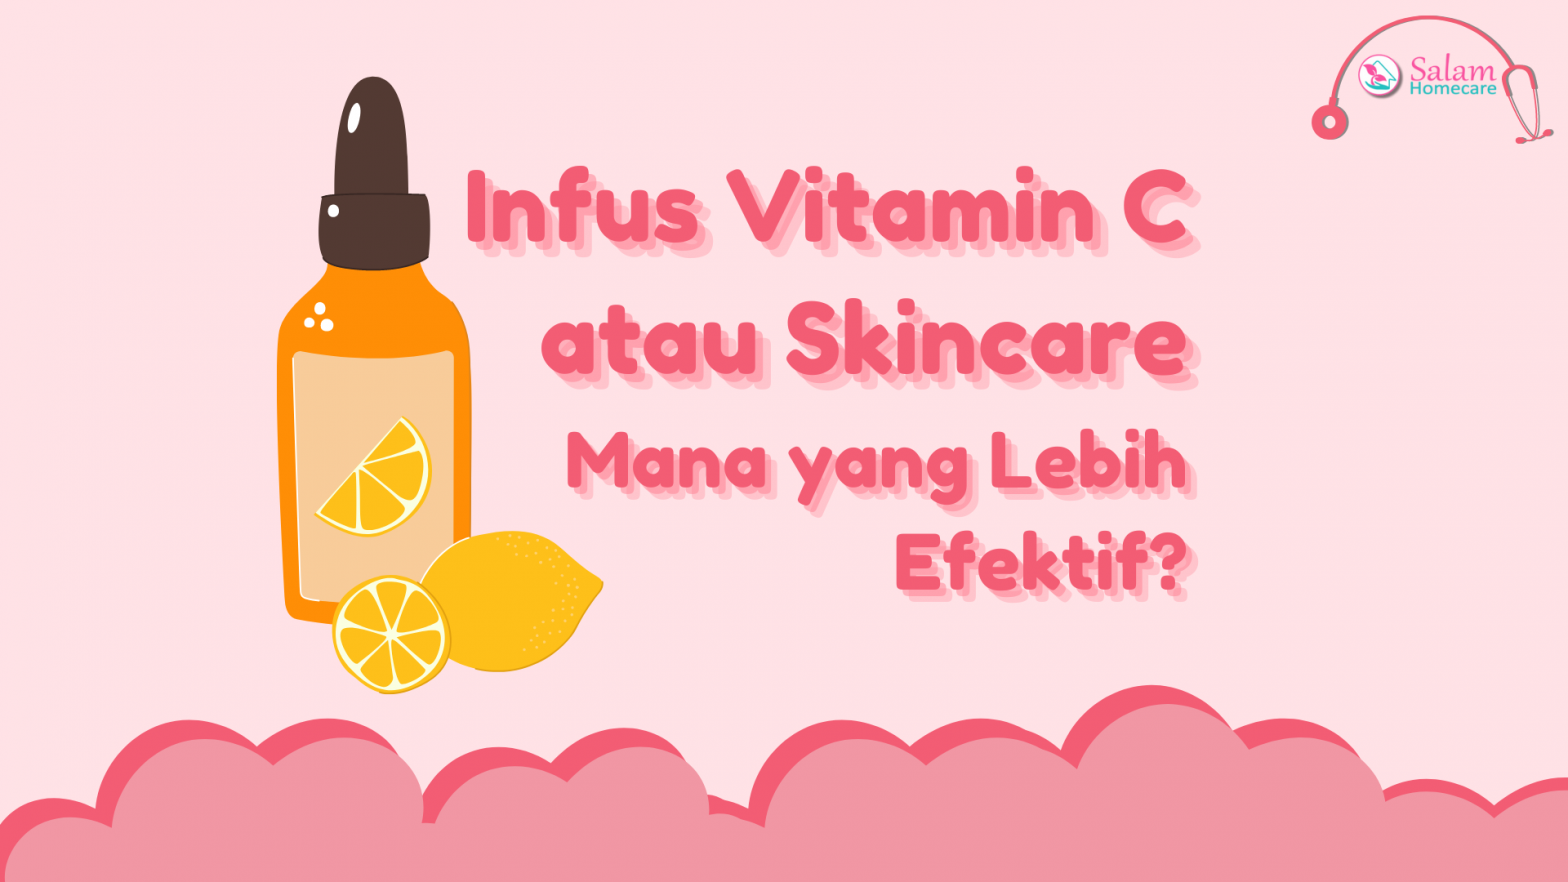 Infus Vitamin C atau Skincare, Mana yang Lebih Efektif?